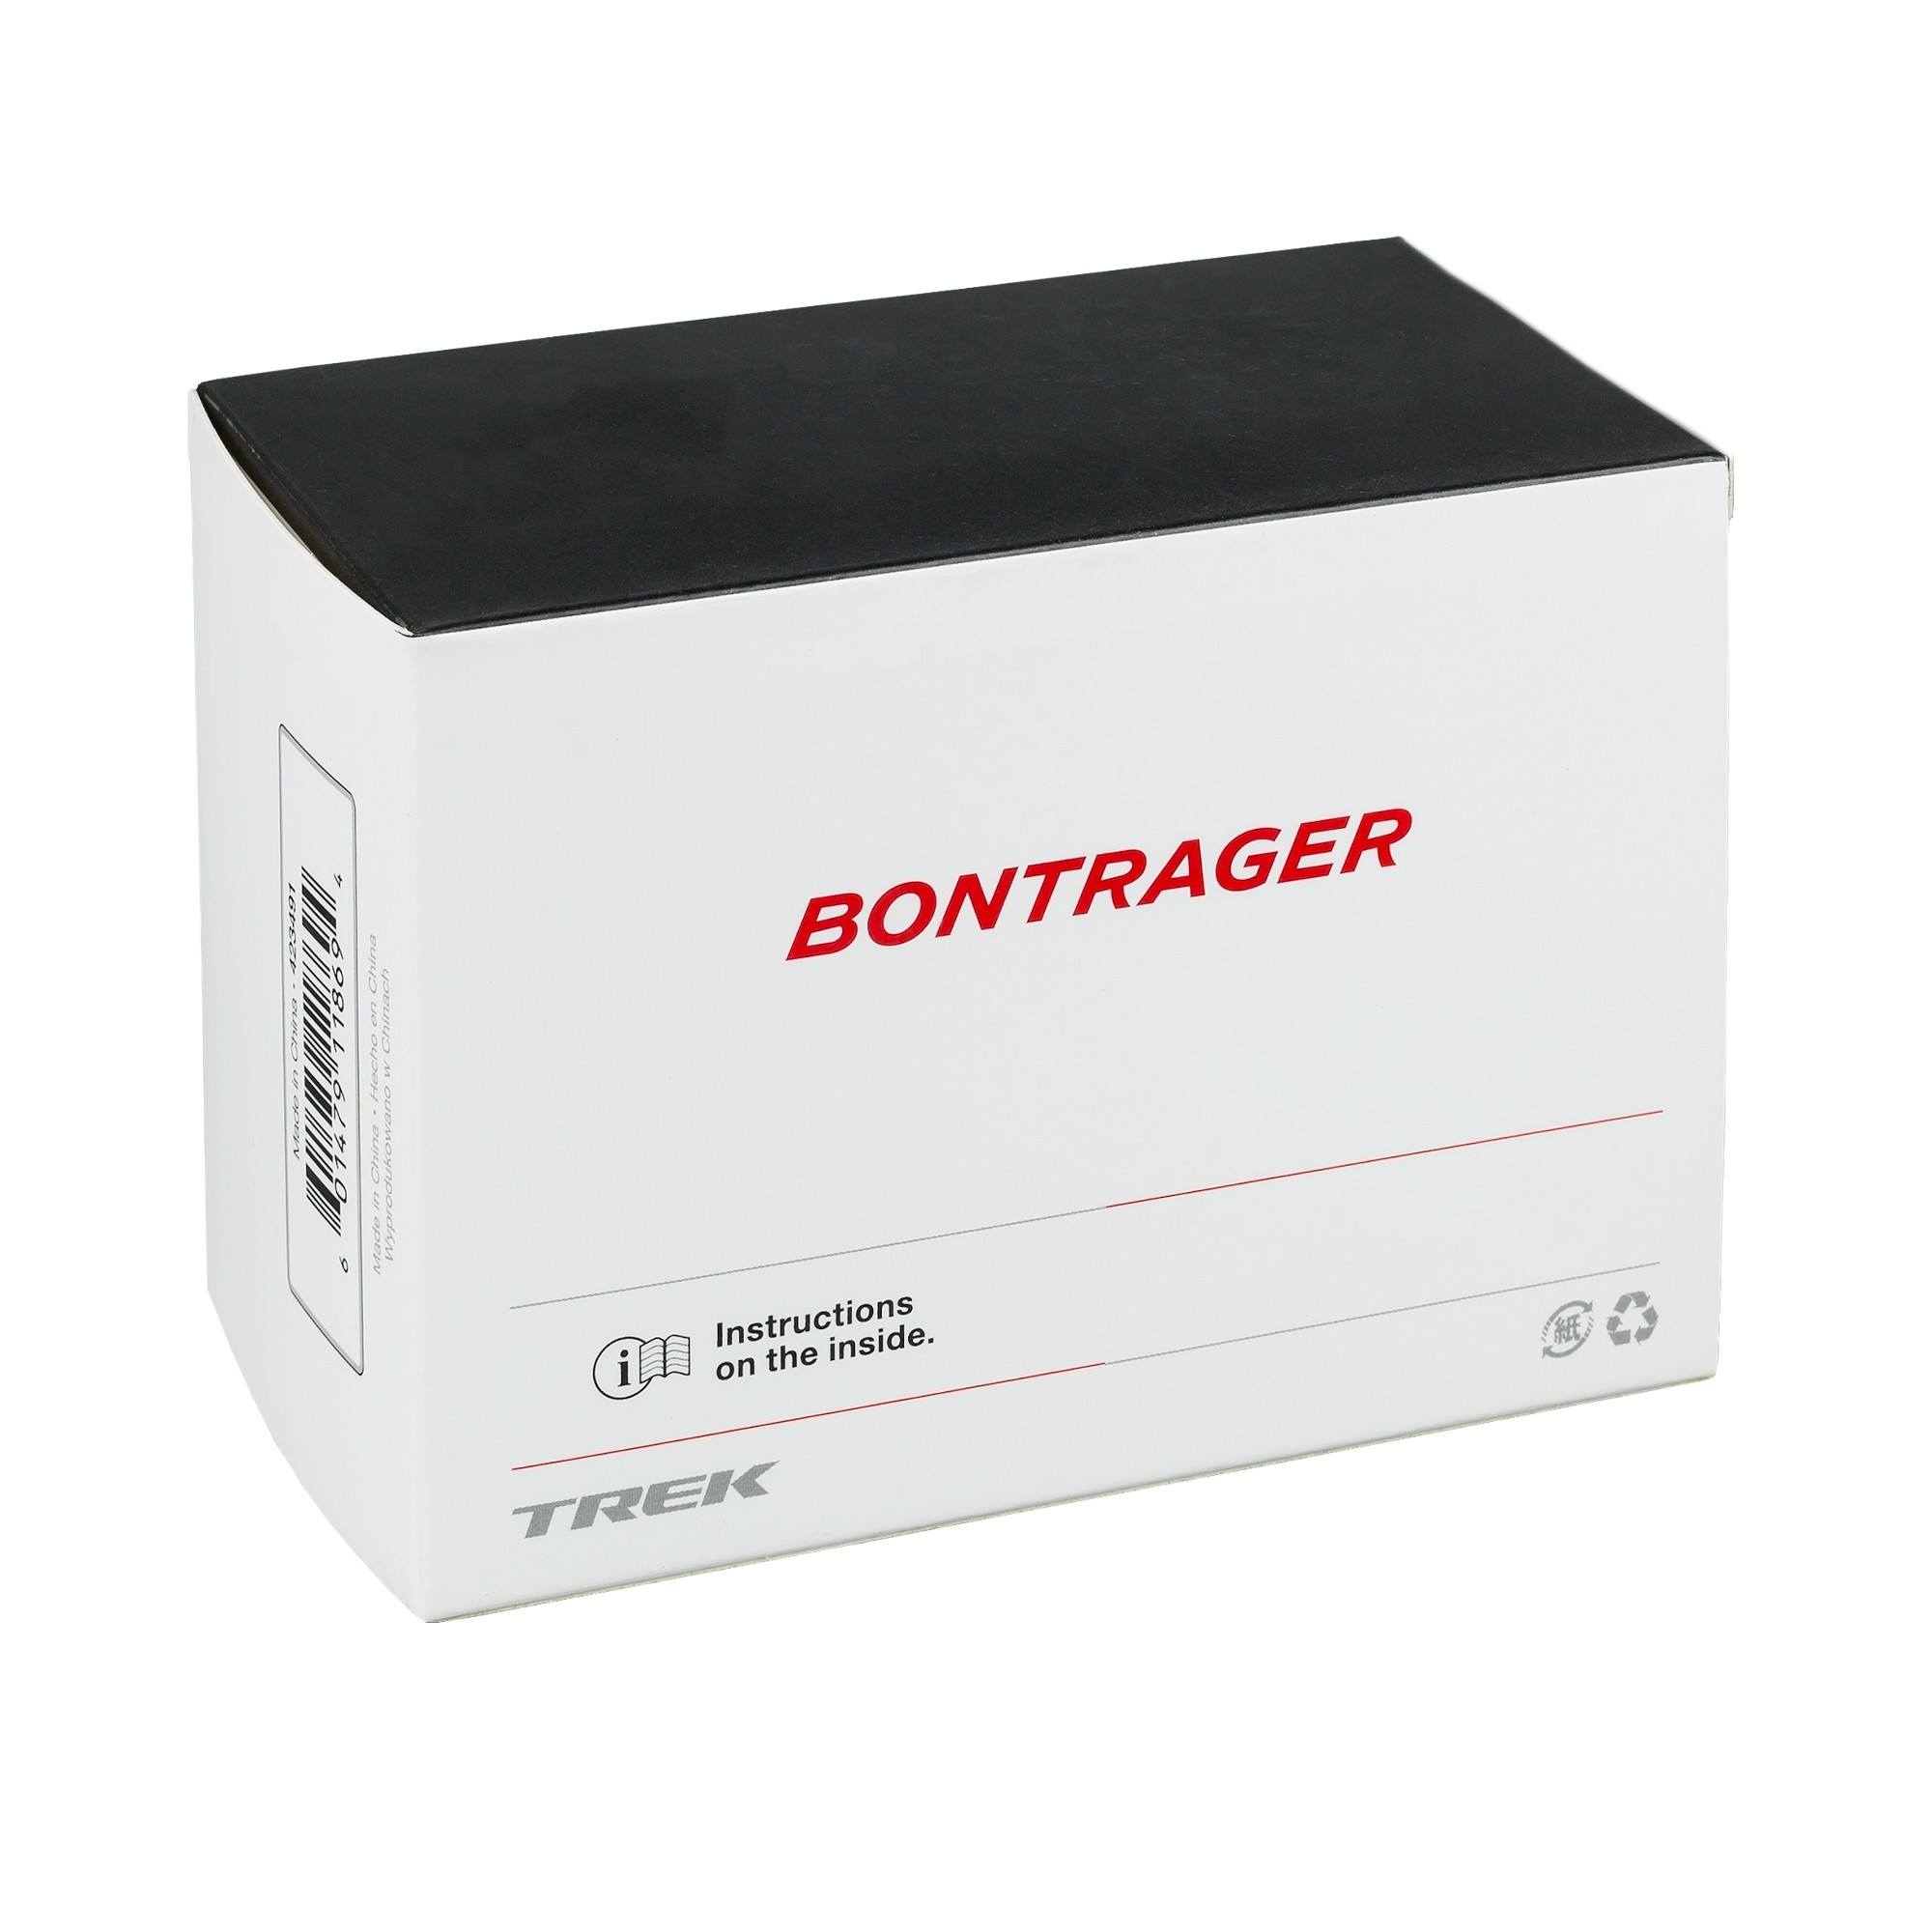 Duše Bontrager 27.5x2.0-2.4 AV 48mm samotěsnící